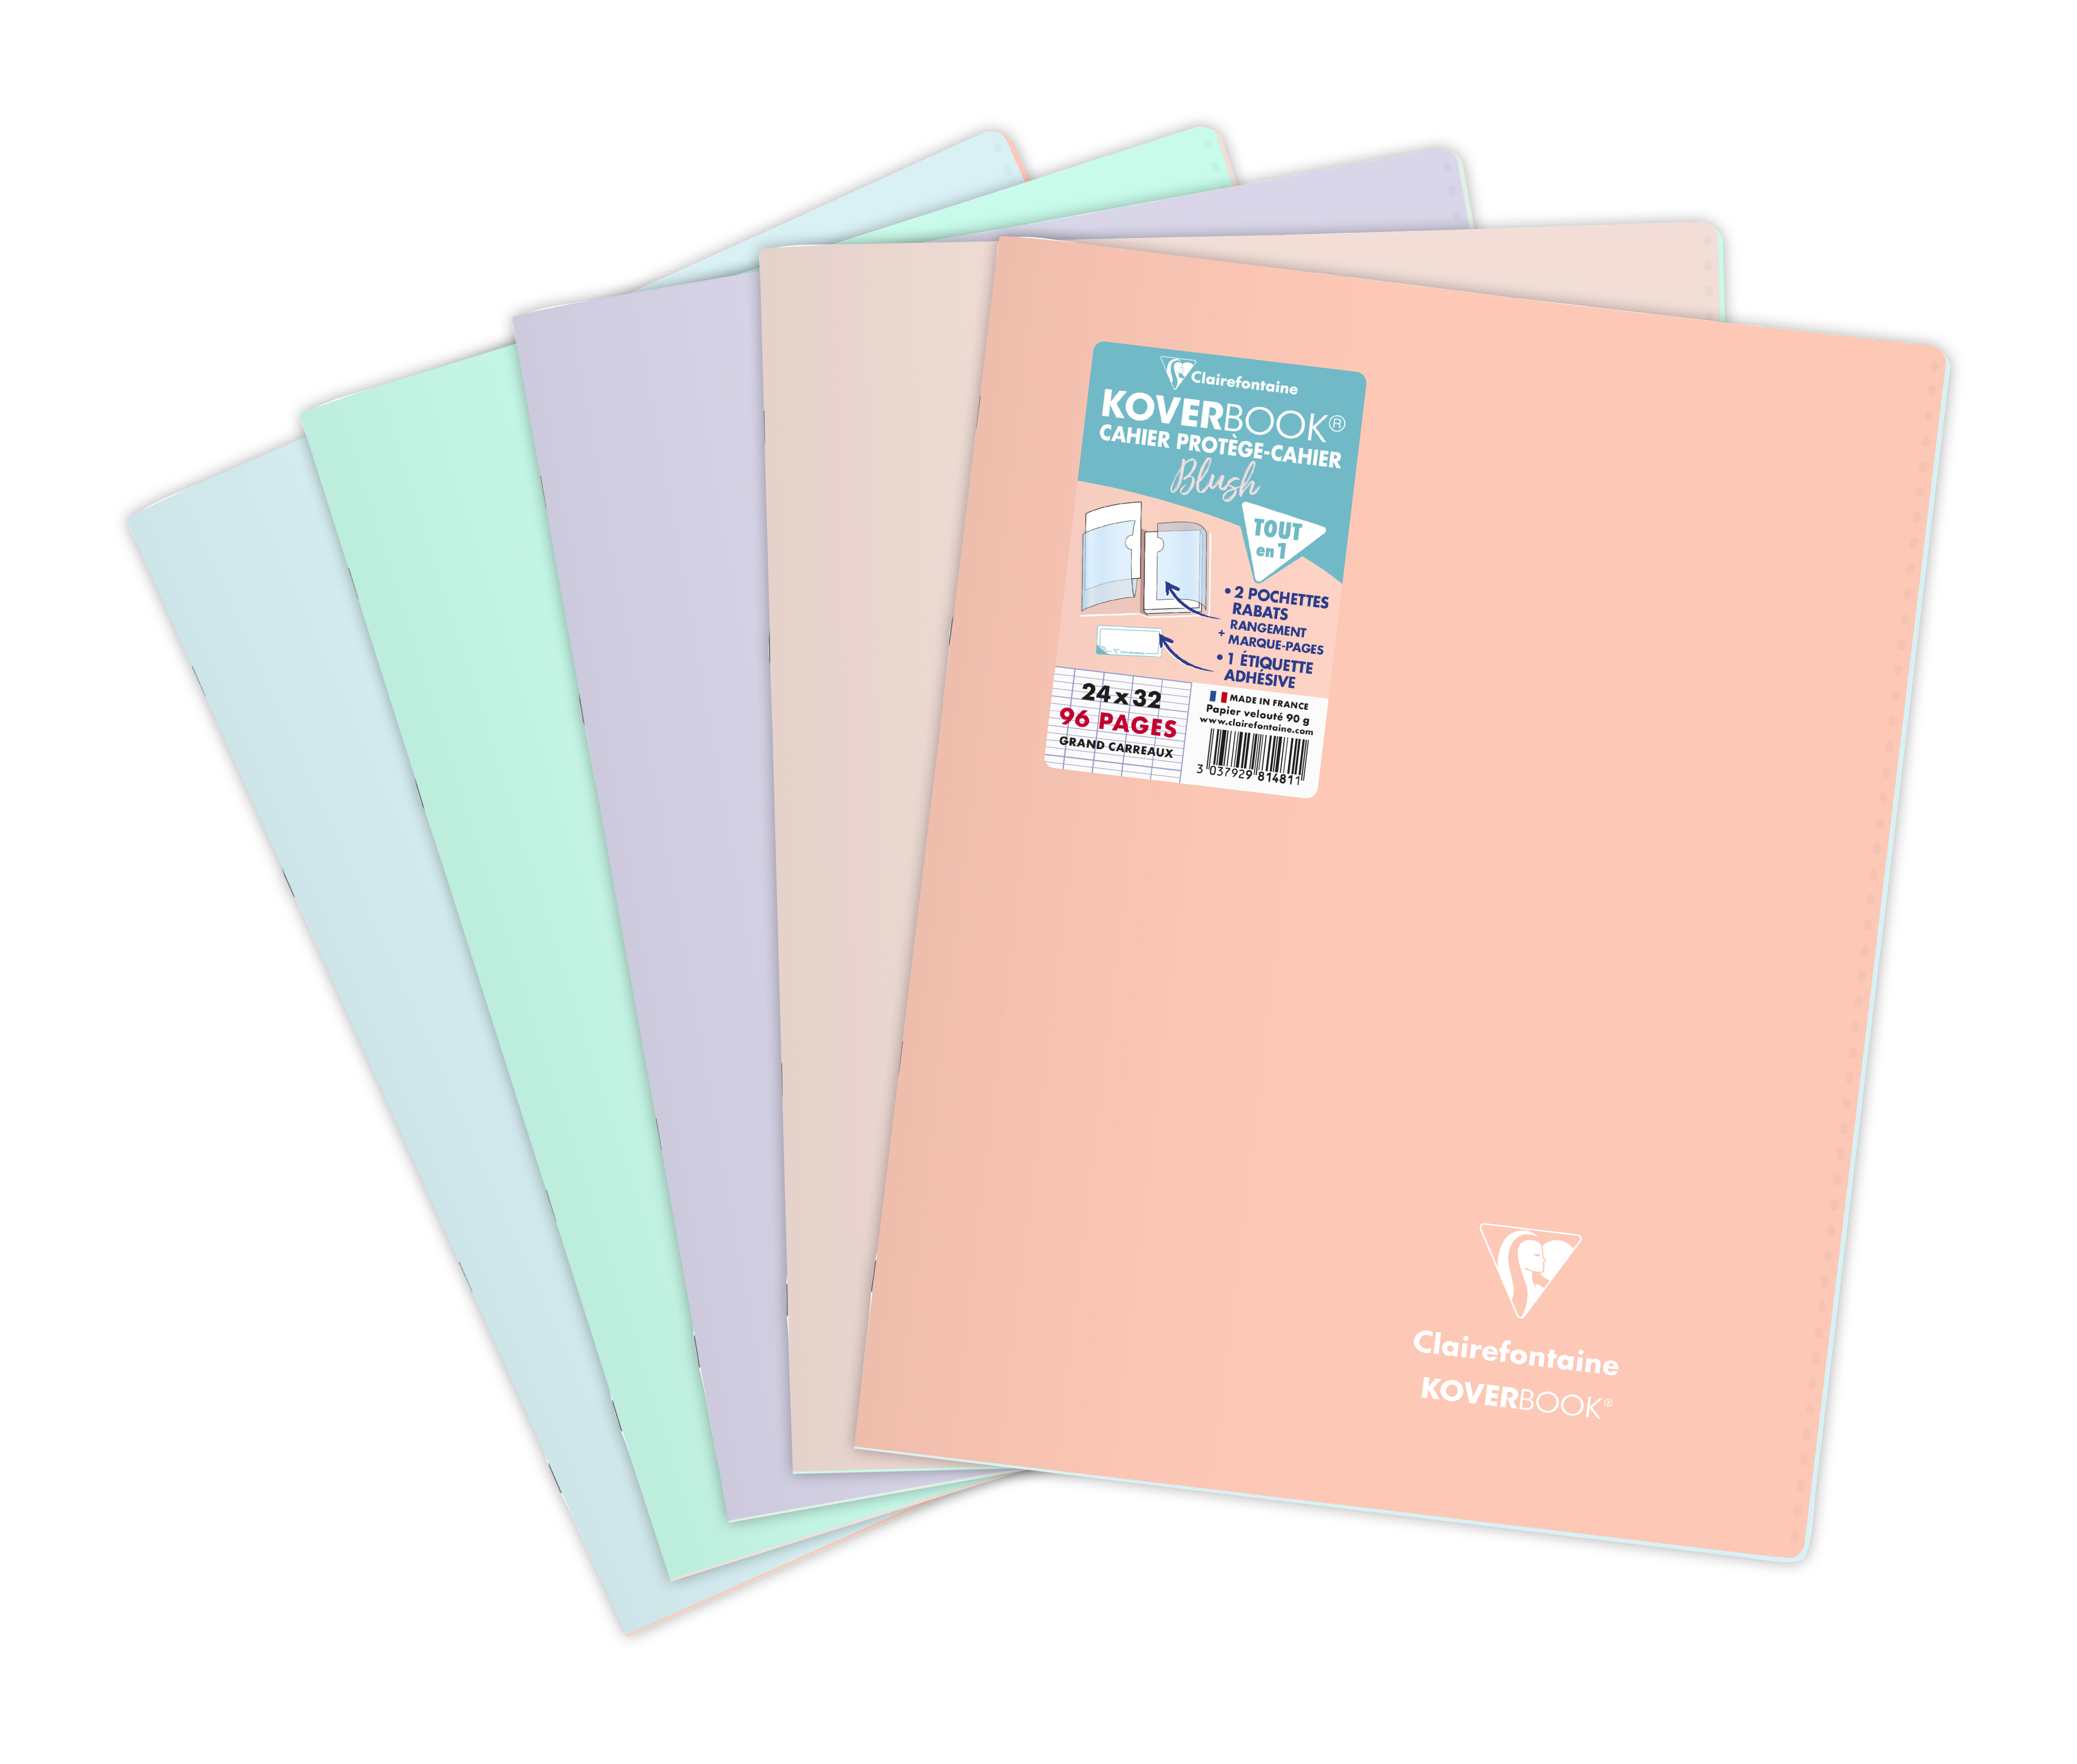 Clairefontaine Koverbook - Cahier polypro 24 x 32 cm - 96 pages - grands carreaux (Seyes) - disponible dans différentes couleurs pastels